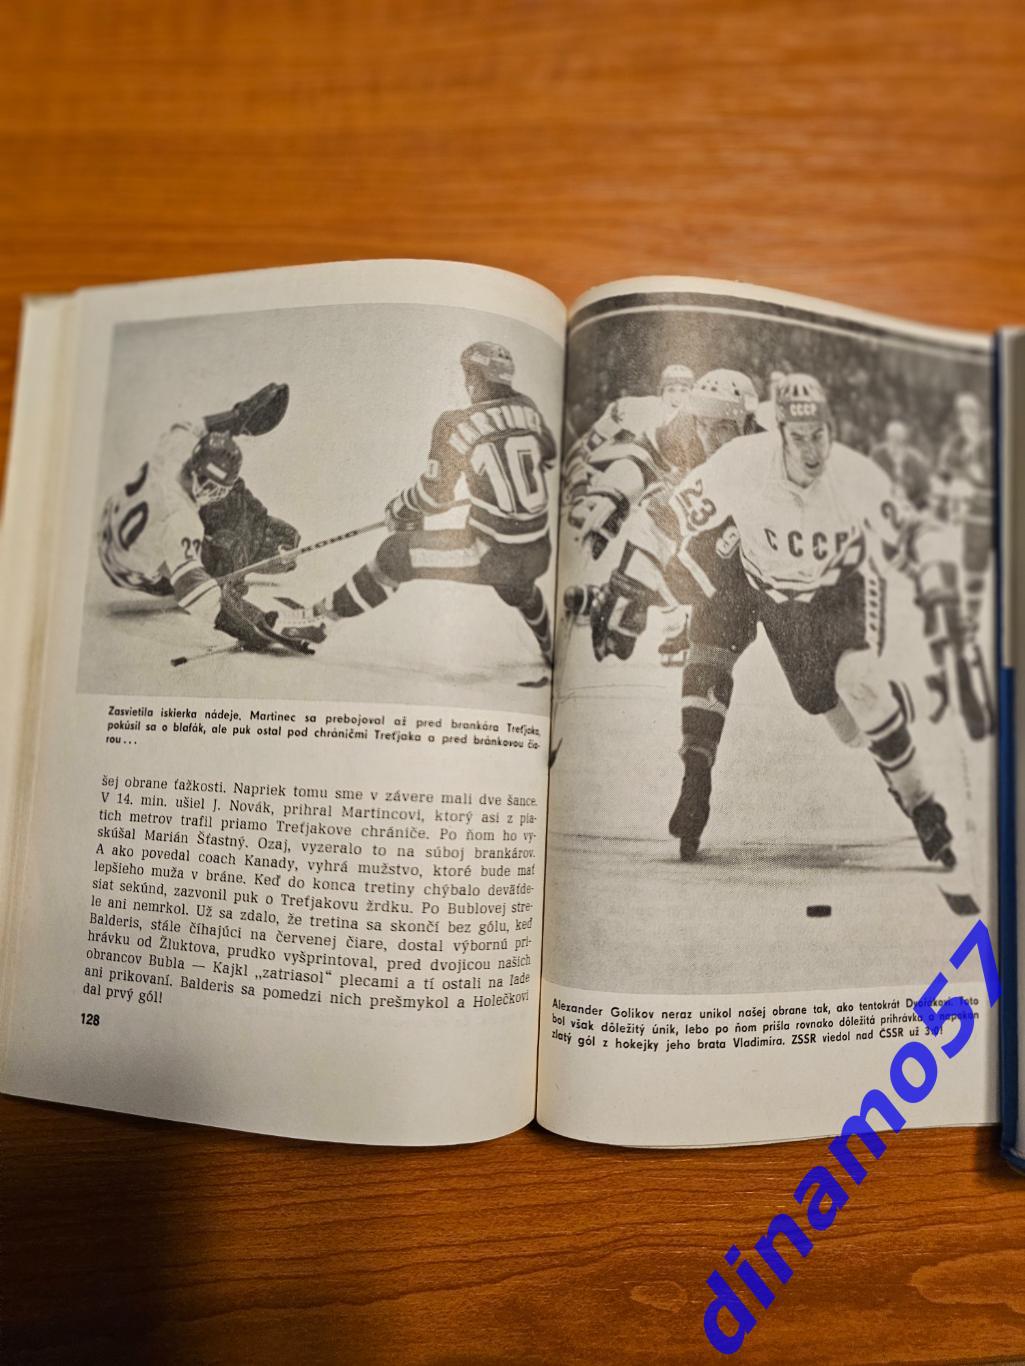 Чемпионат Мира по хоккею 1978 - HOKEJ 78 PRAHA 3